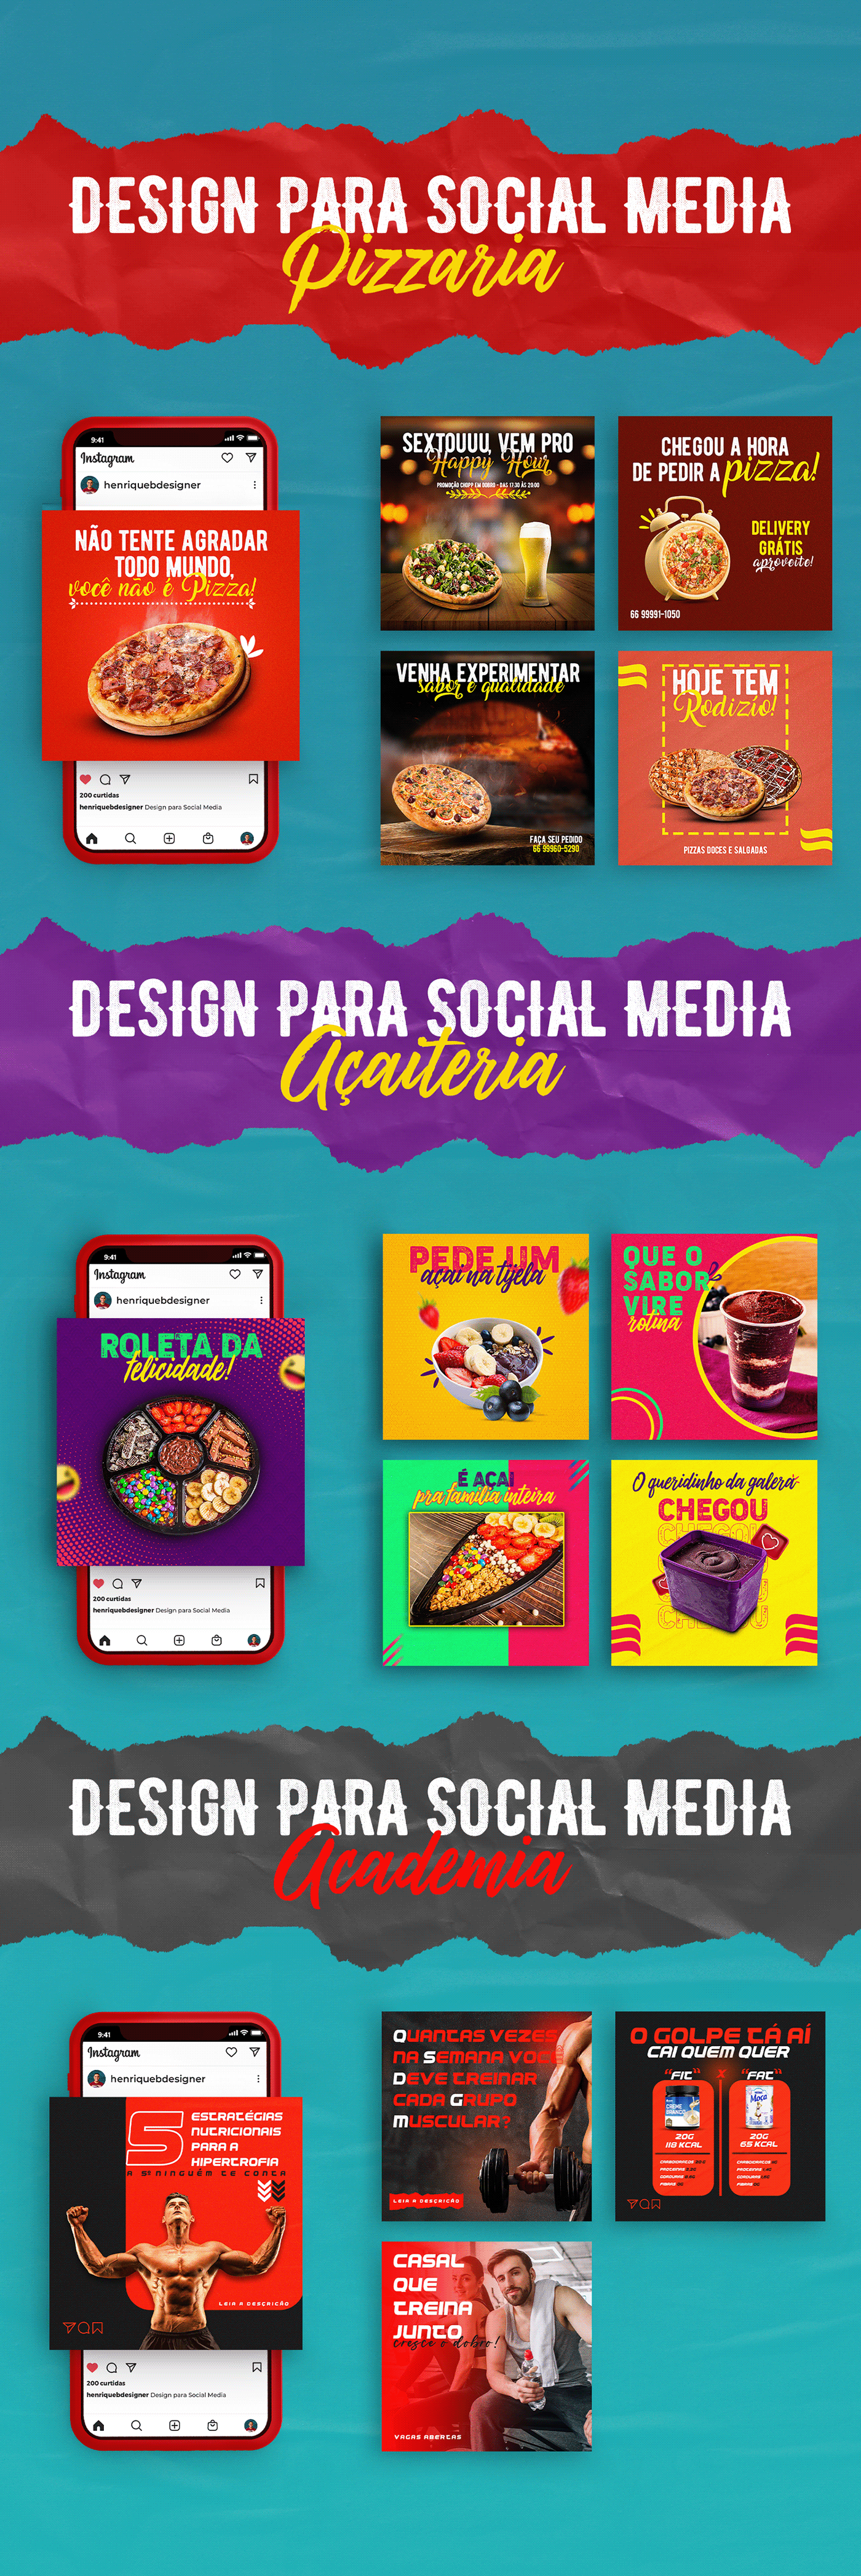 Design para Social Media Pizzaria, Açaiteria e Fitness
